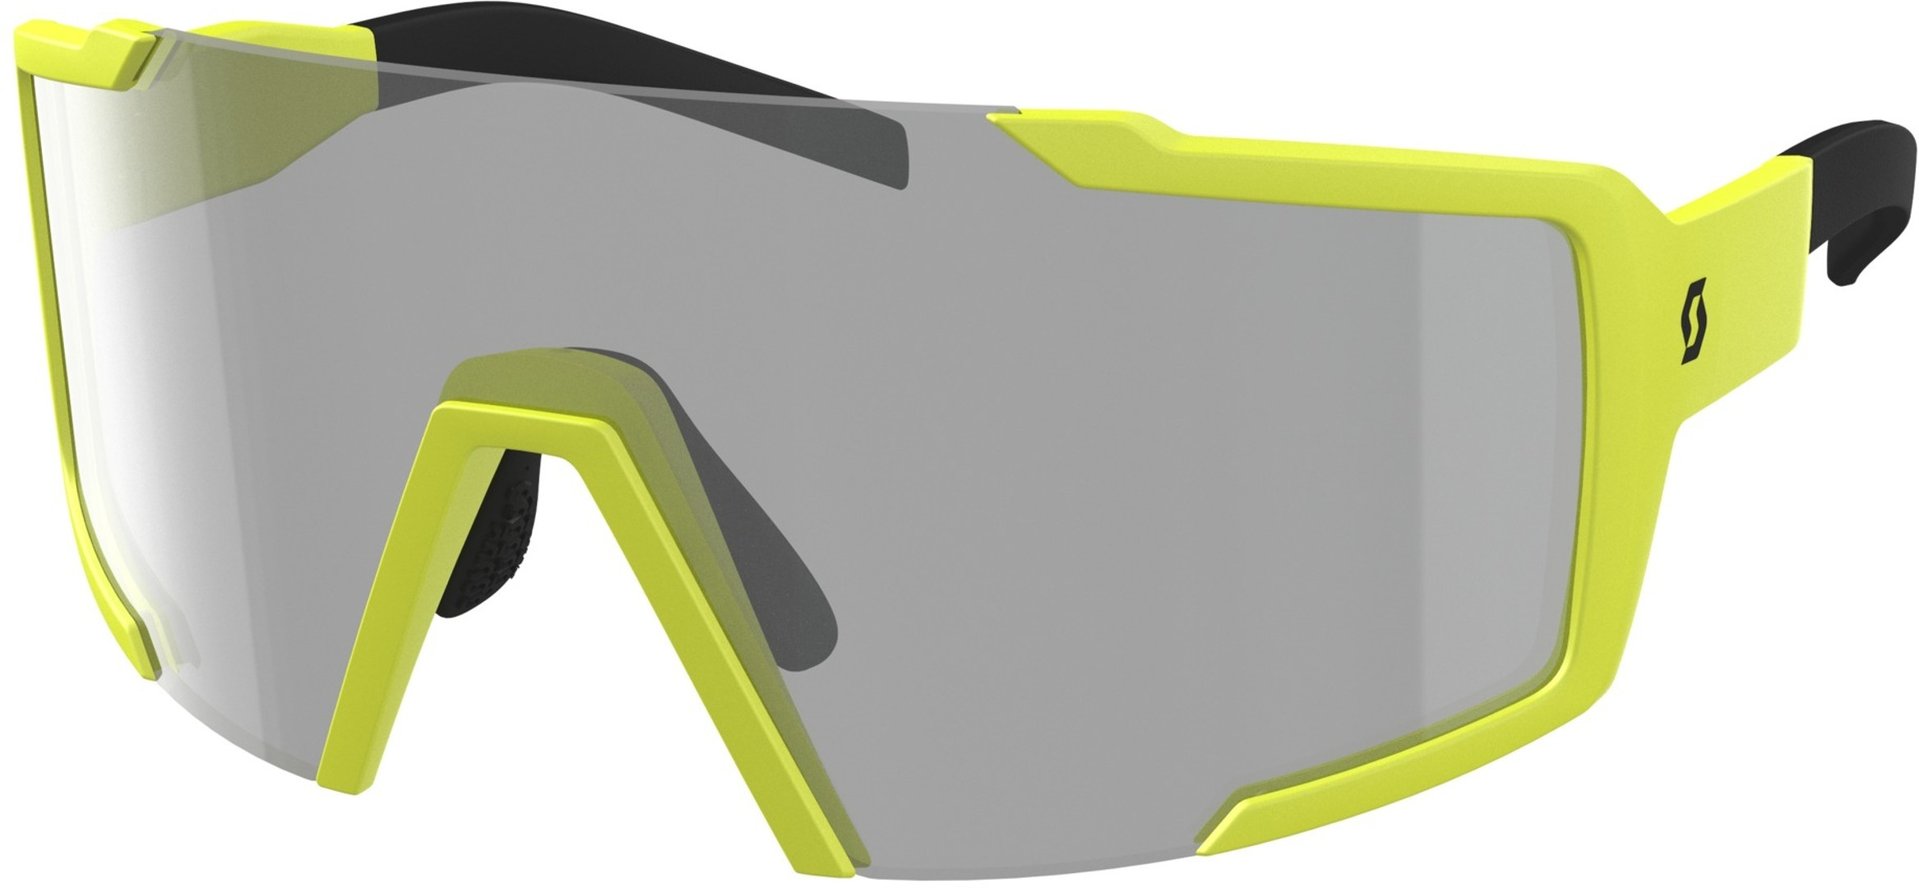 солнцезащитные очки scott shield ls с регулируемой носовой накладкой черный серый Солнцезащитные очки Scott Shield LS с регулируемой носовой накладкой, желтый/серый